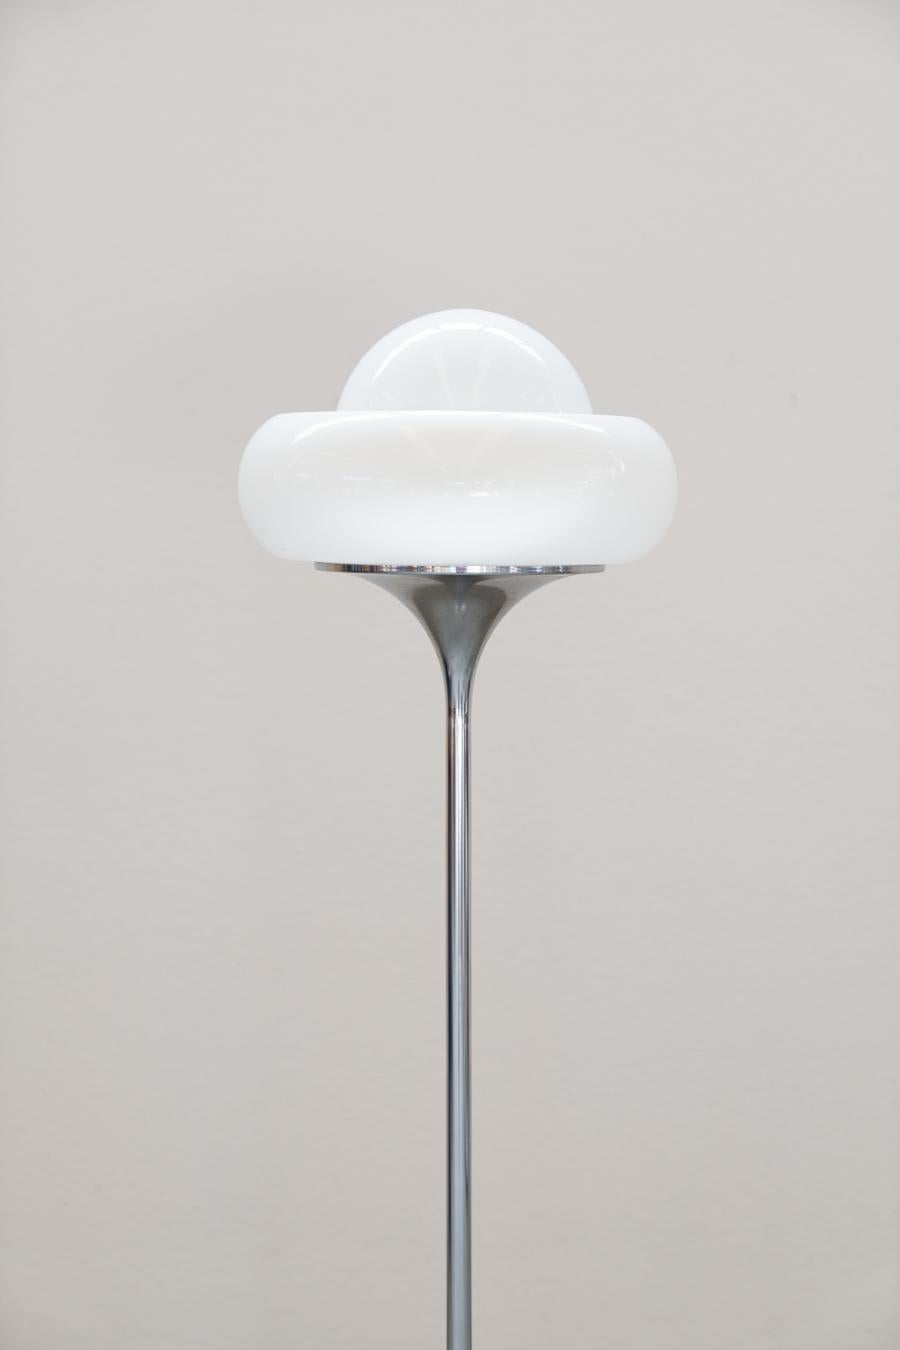 Lampadaire de Harvey Guzzini, 1960
Lampadaire italien emblématique conçu par Harvey Guzzini pour Guzzini dans les années 1960. Base ronde en métal chromé, avec contrepoids en fonte à l'intérieur. Longue tige chromée. Porte-lampe conique rond chromé,